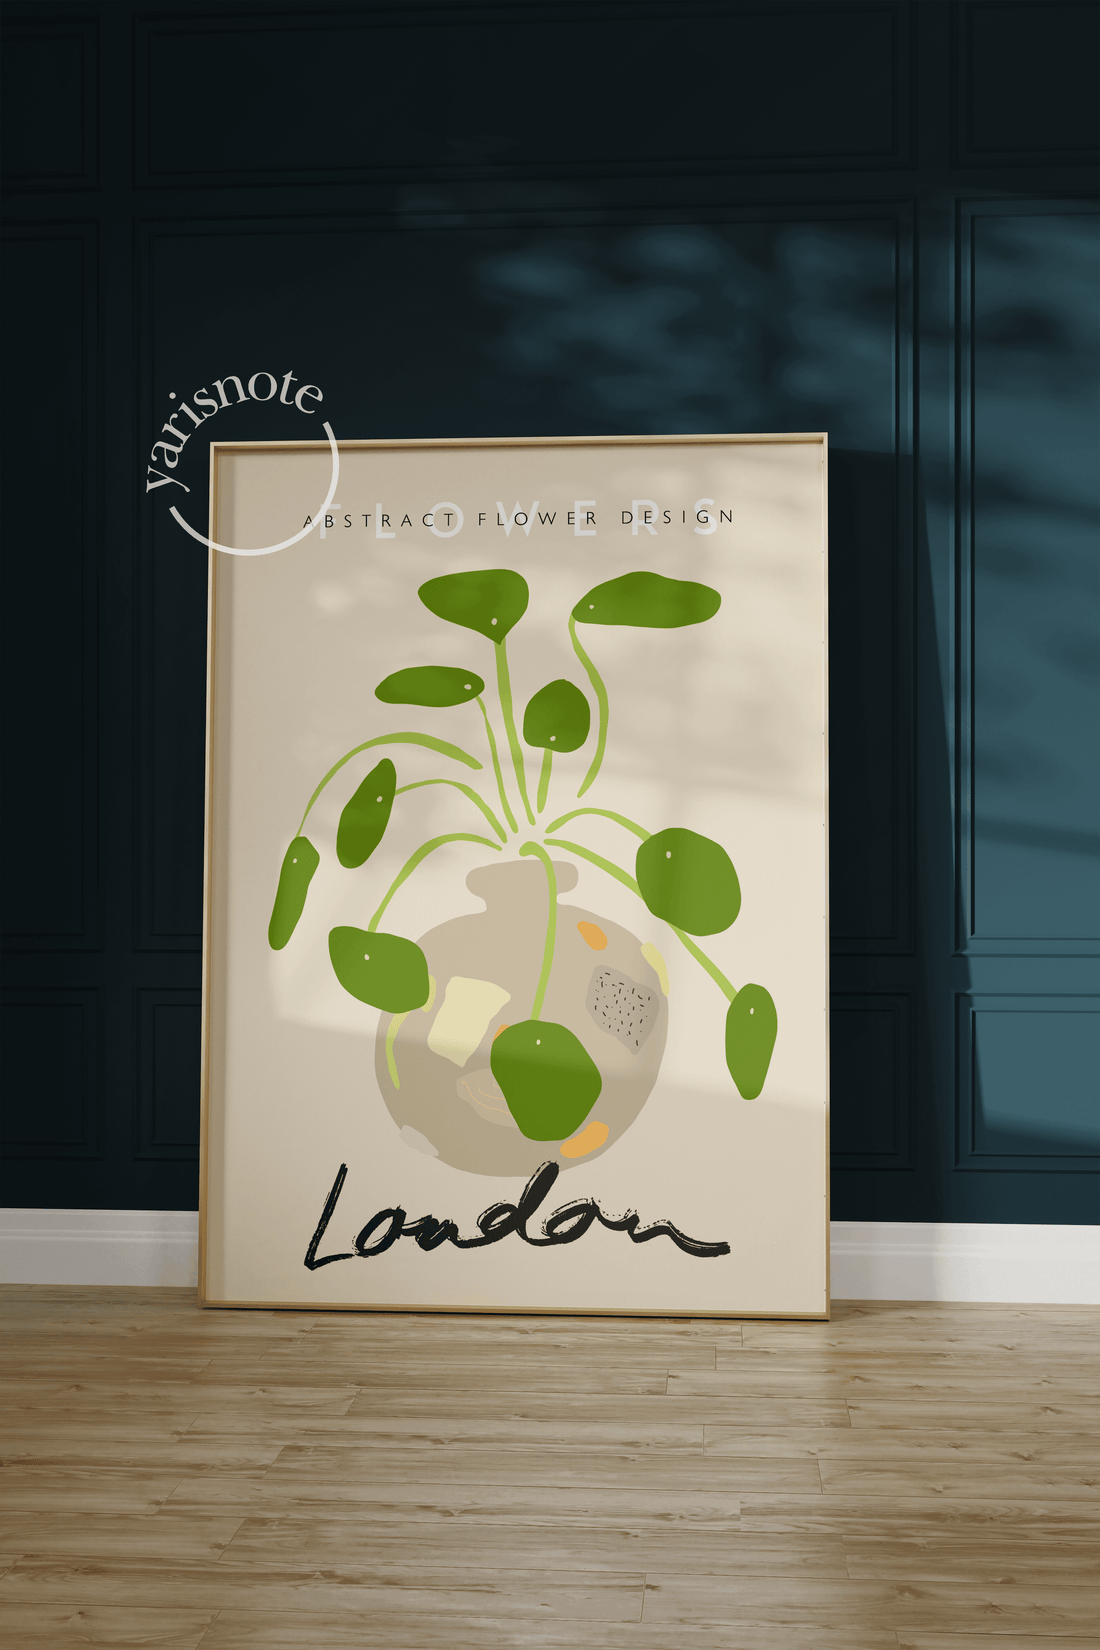 London Flowers Çerçevesiz Poster